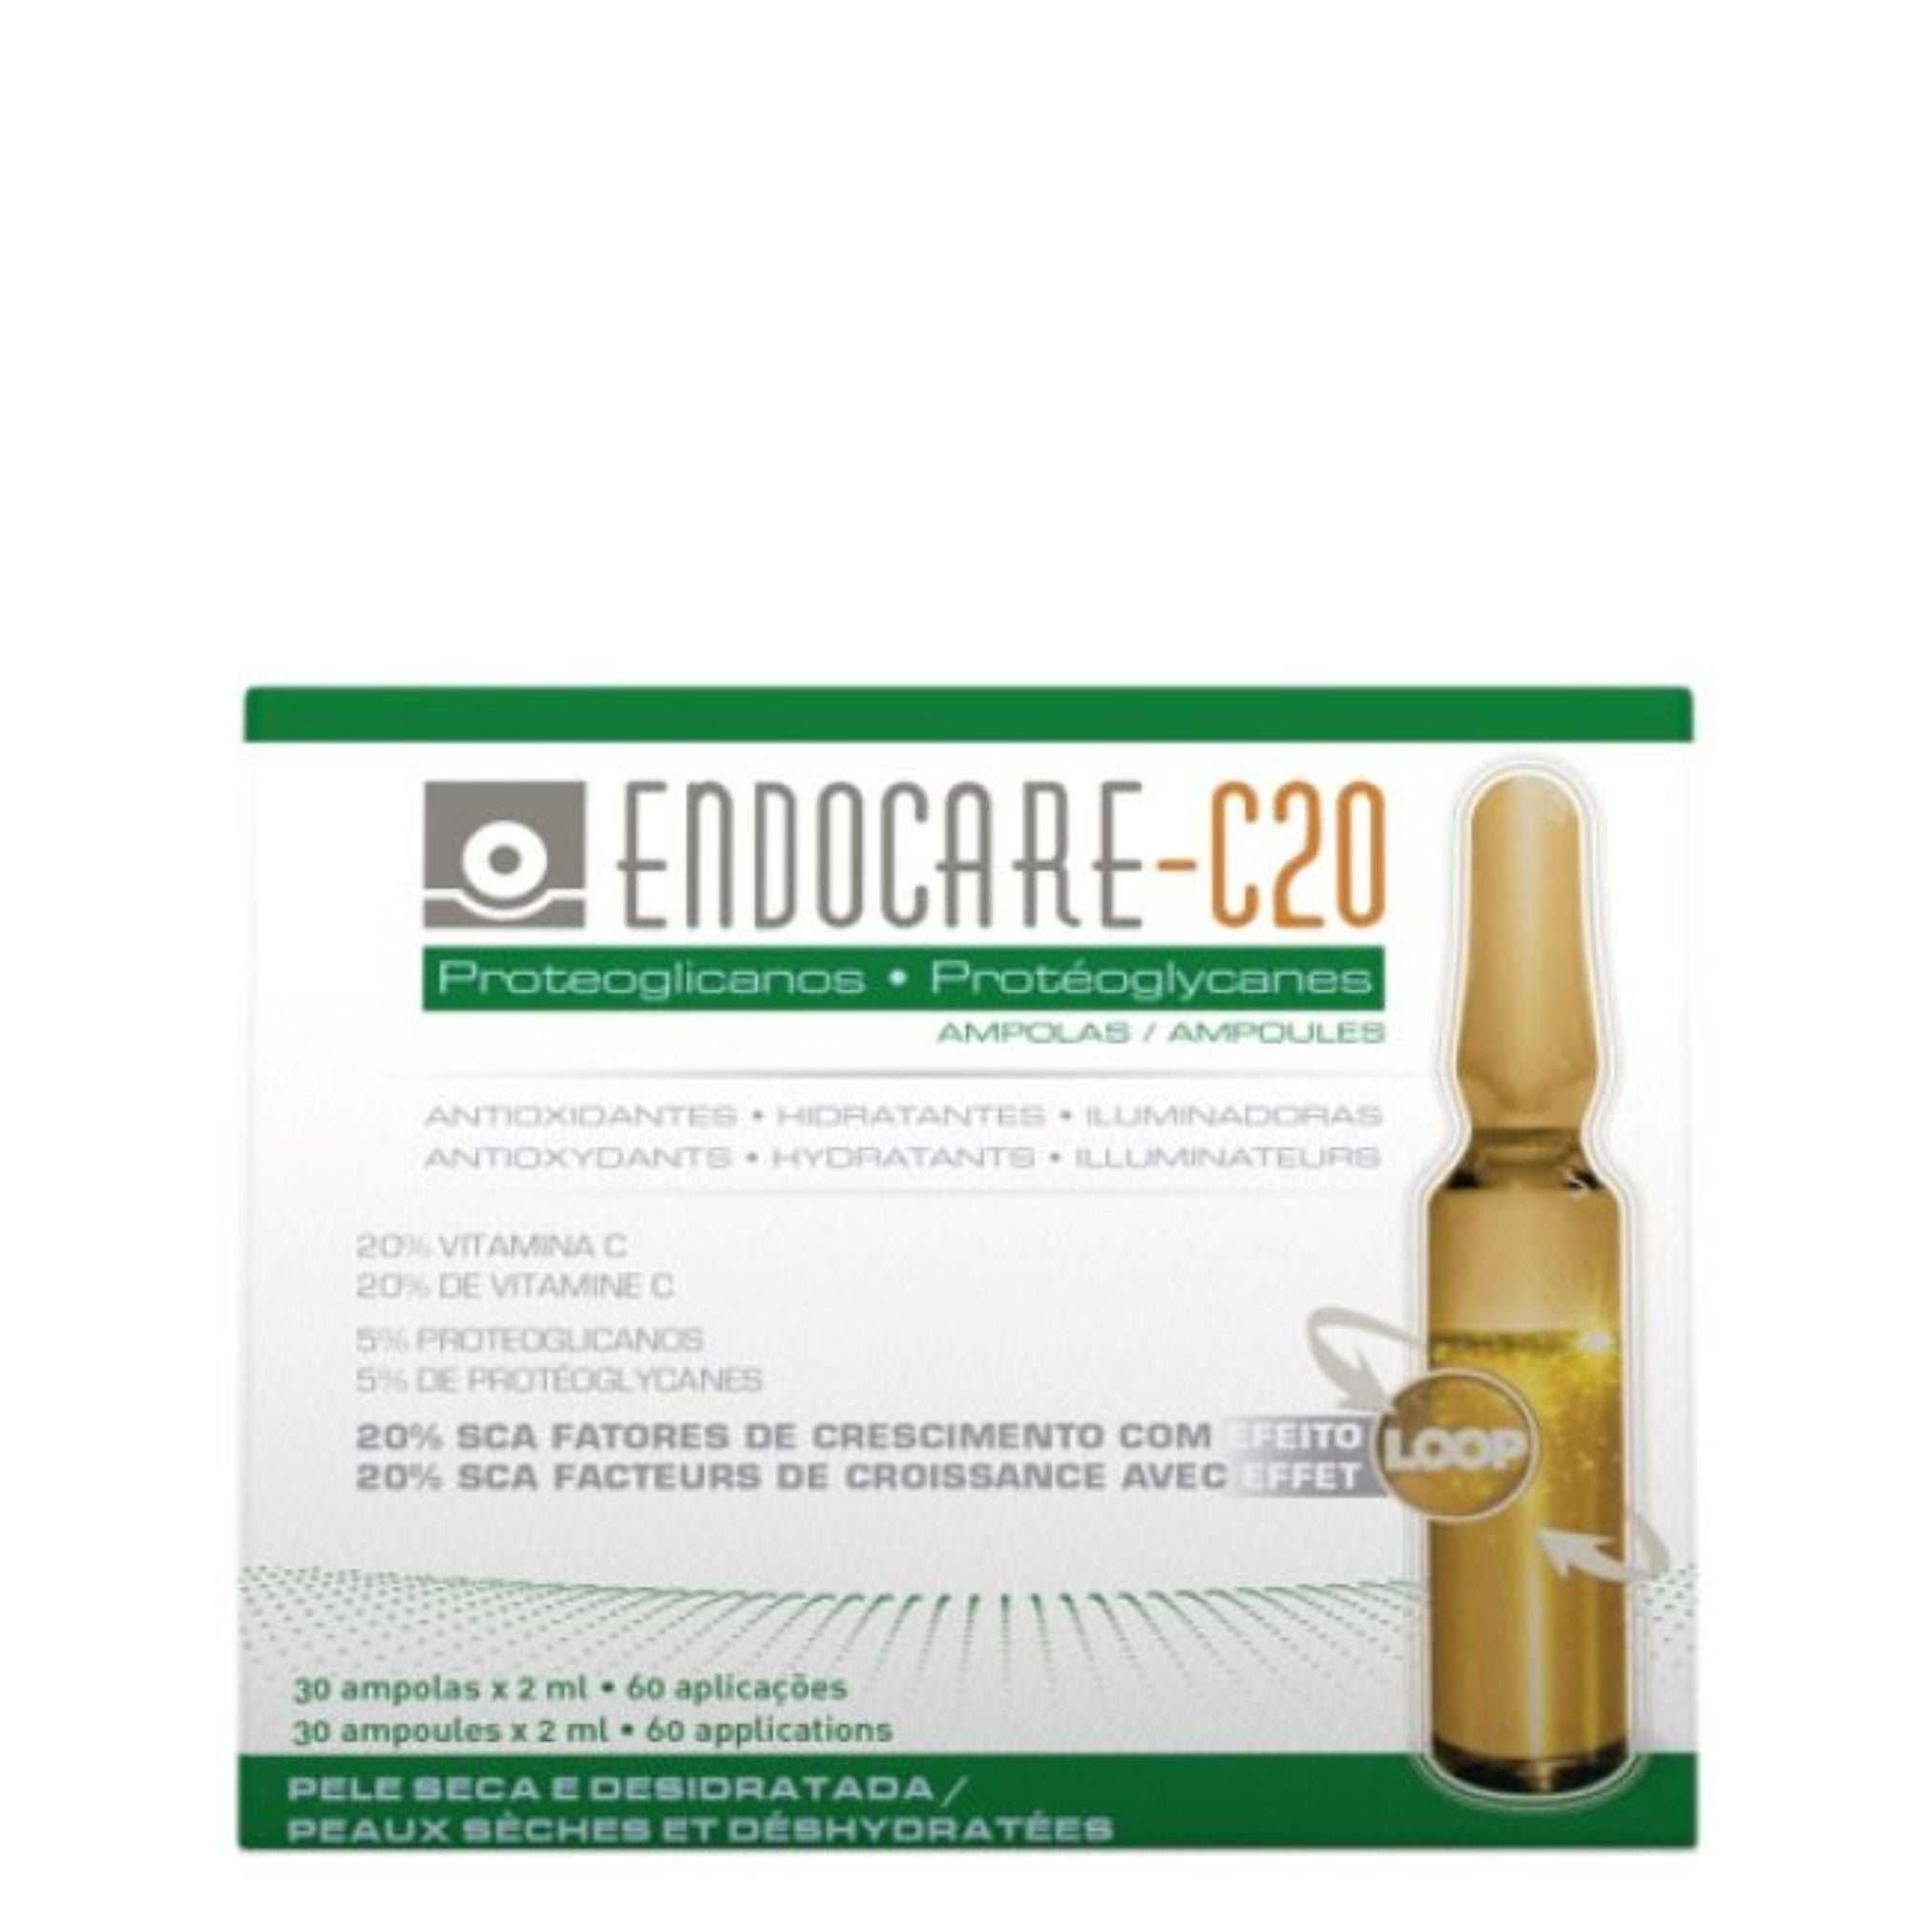 Endocare-C20 Proteoglicanos Oil Free Ampoules 30x2ml